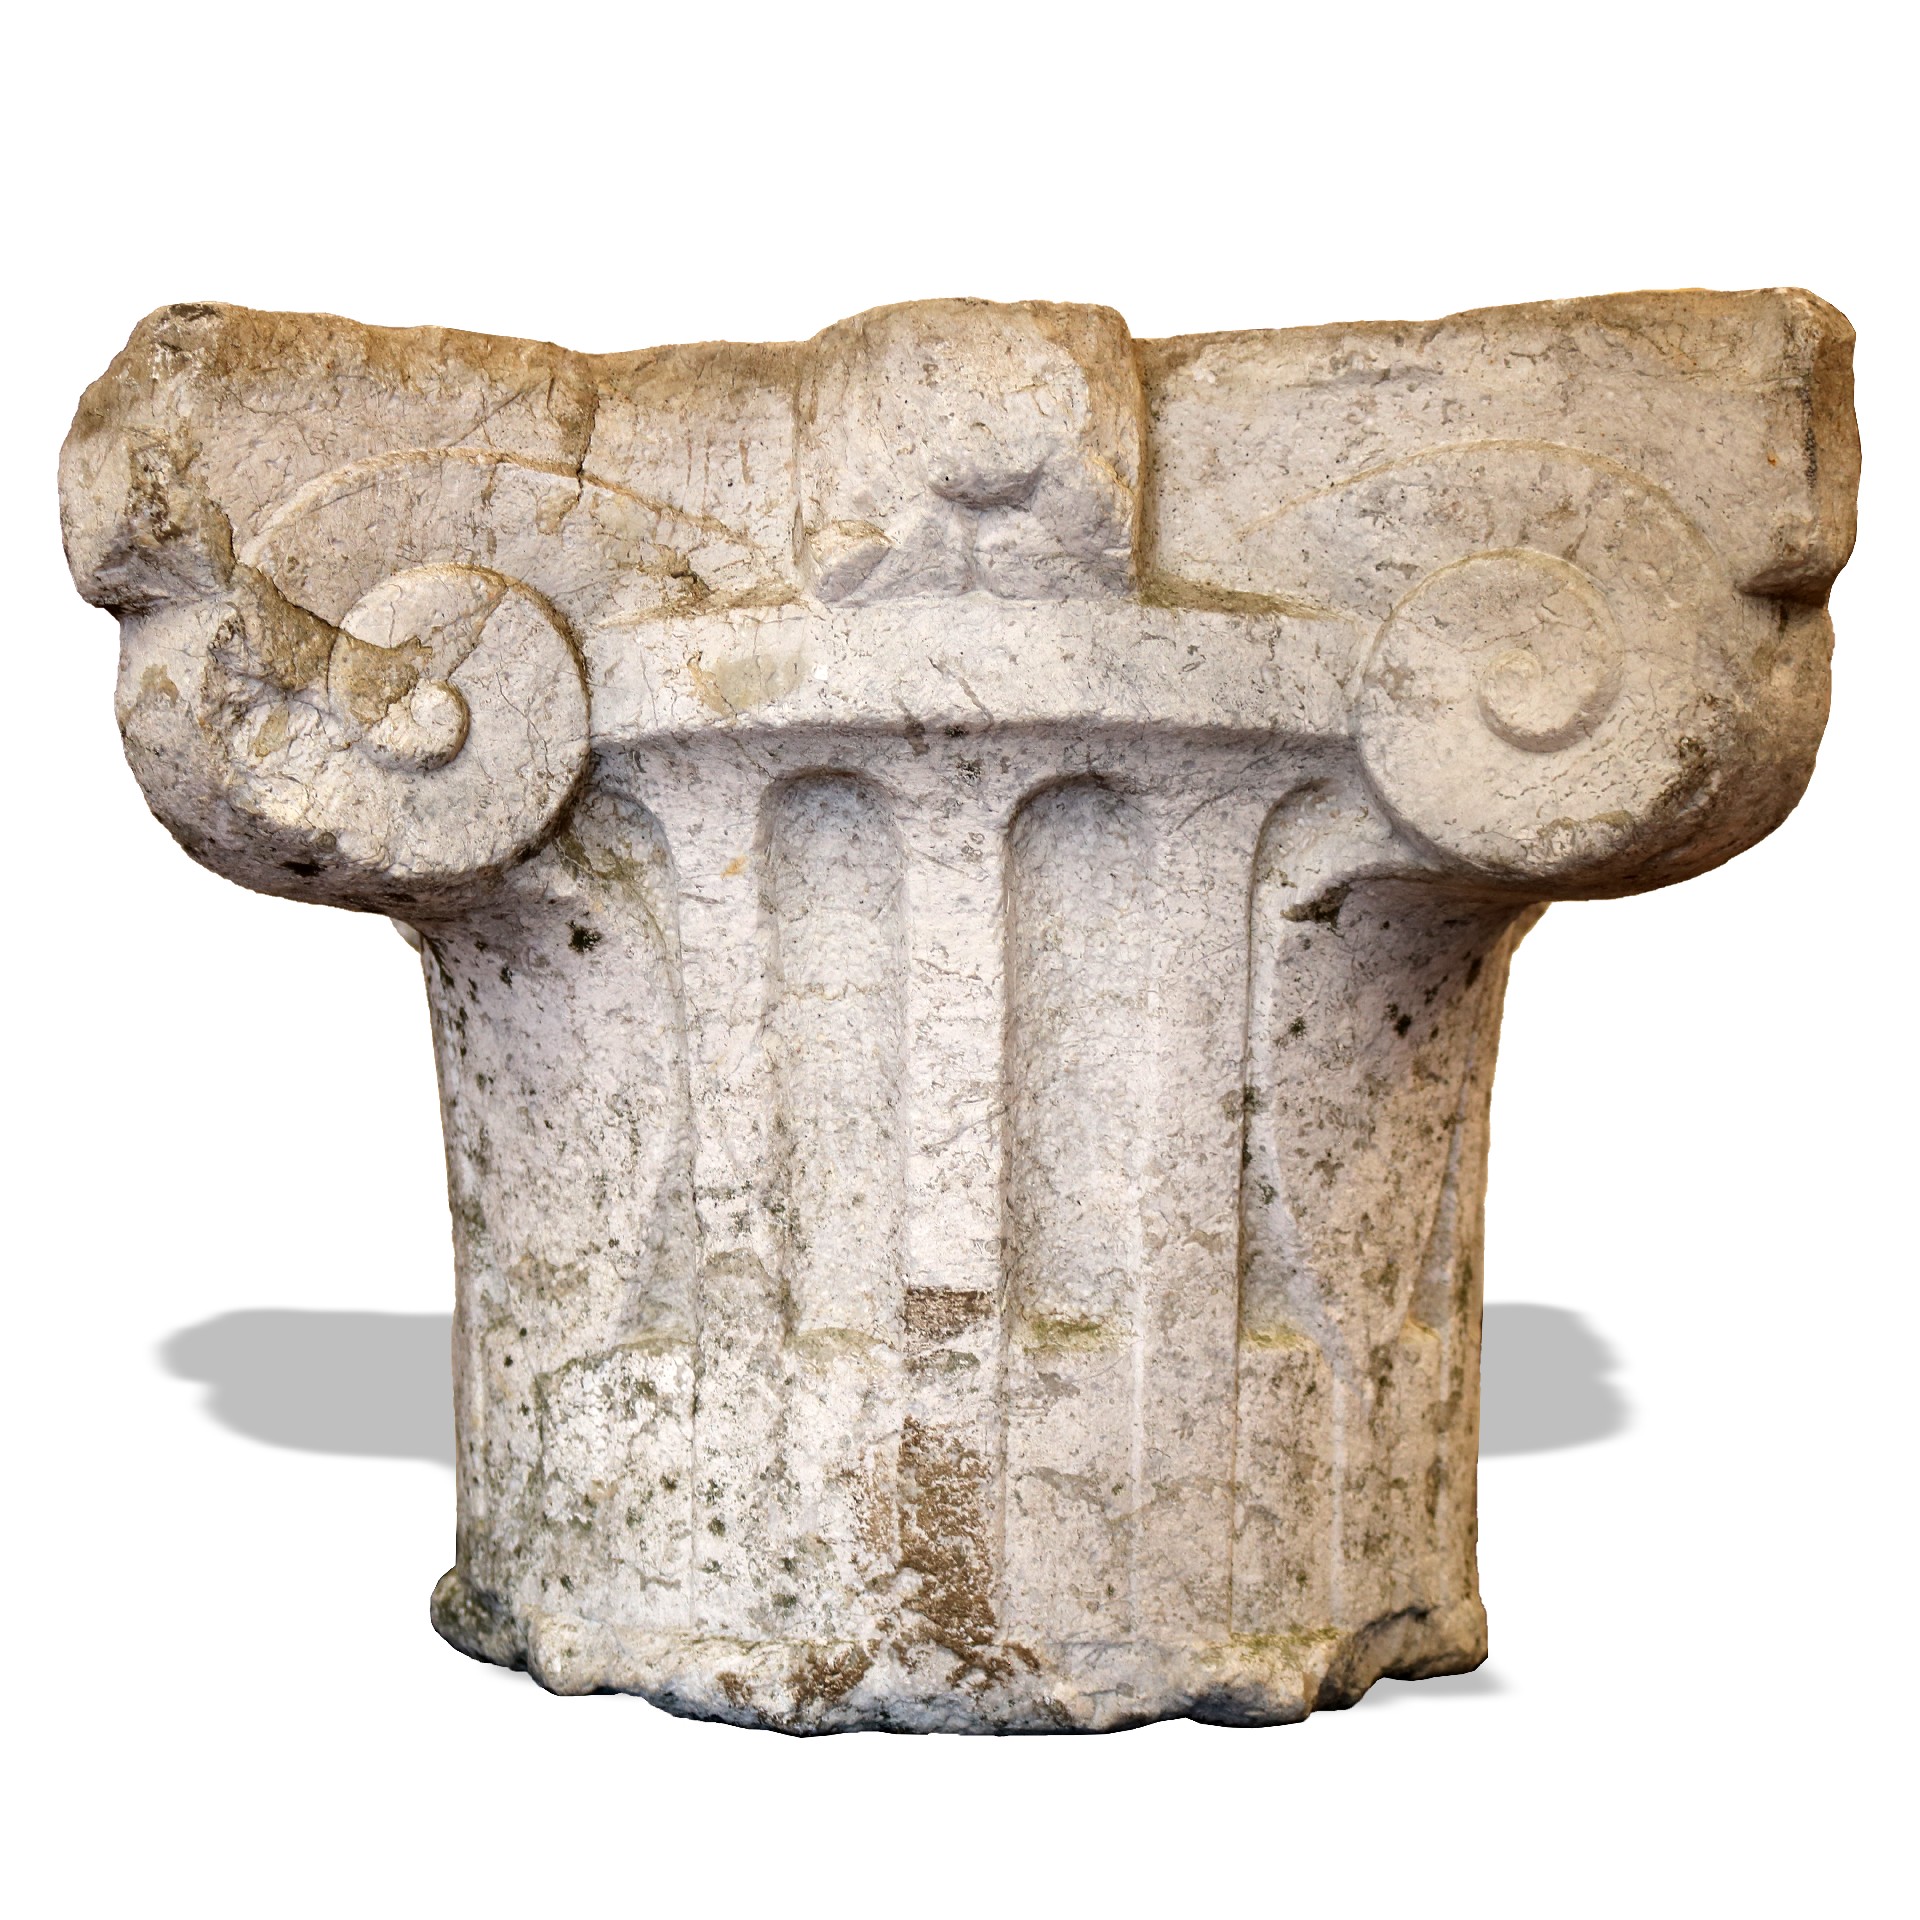 Capitello in pietra. - Capitelli basi per colonne - Architettura - Prodotti - Antichità Fiorillo